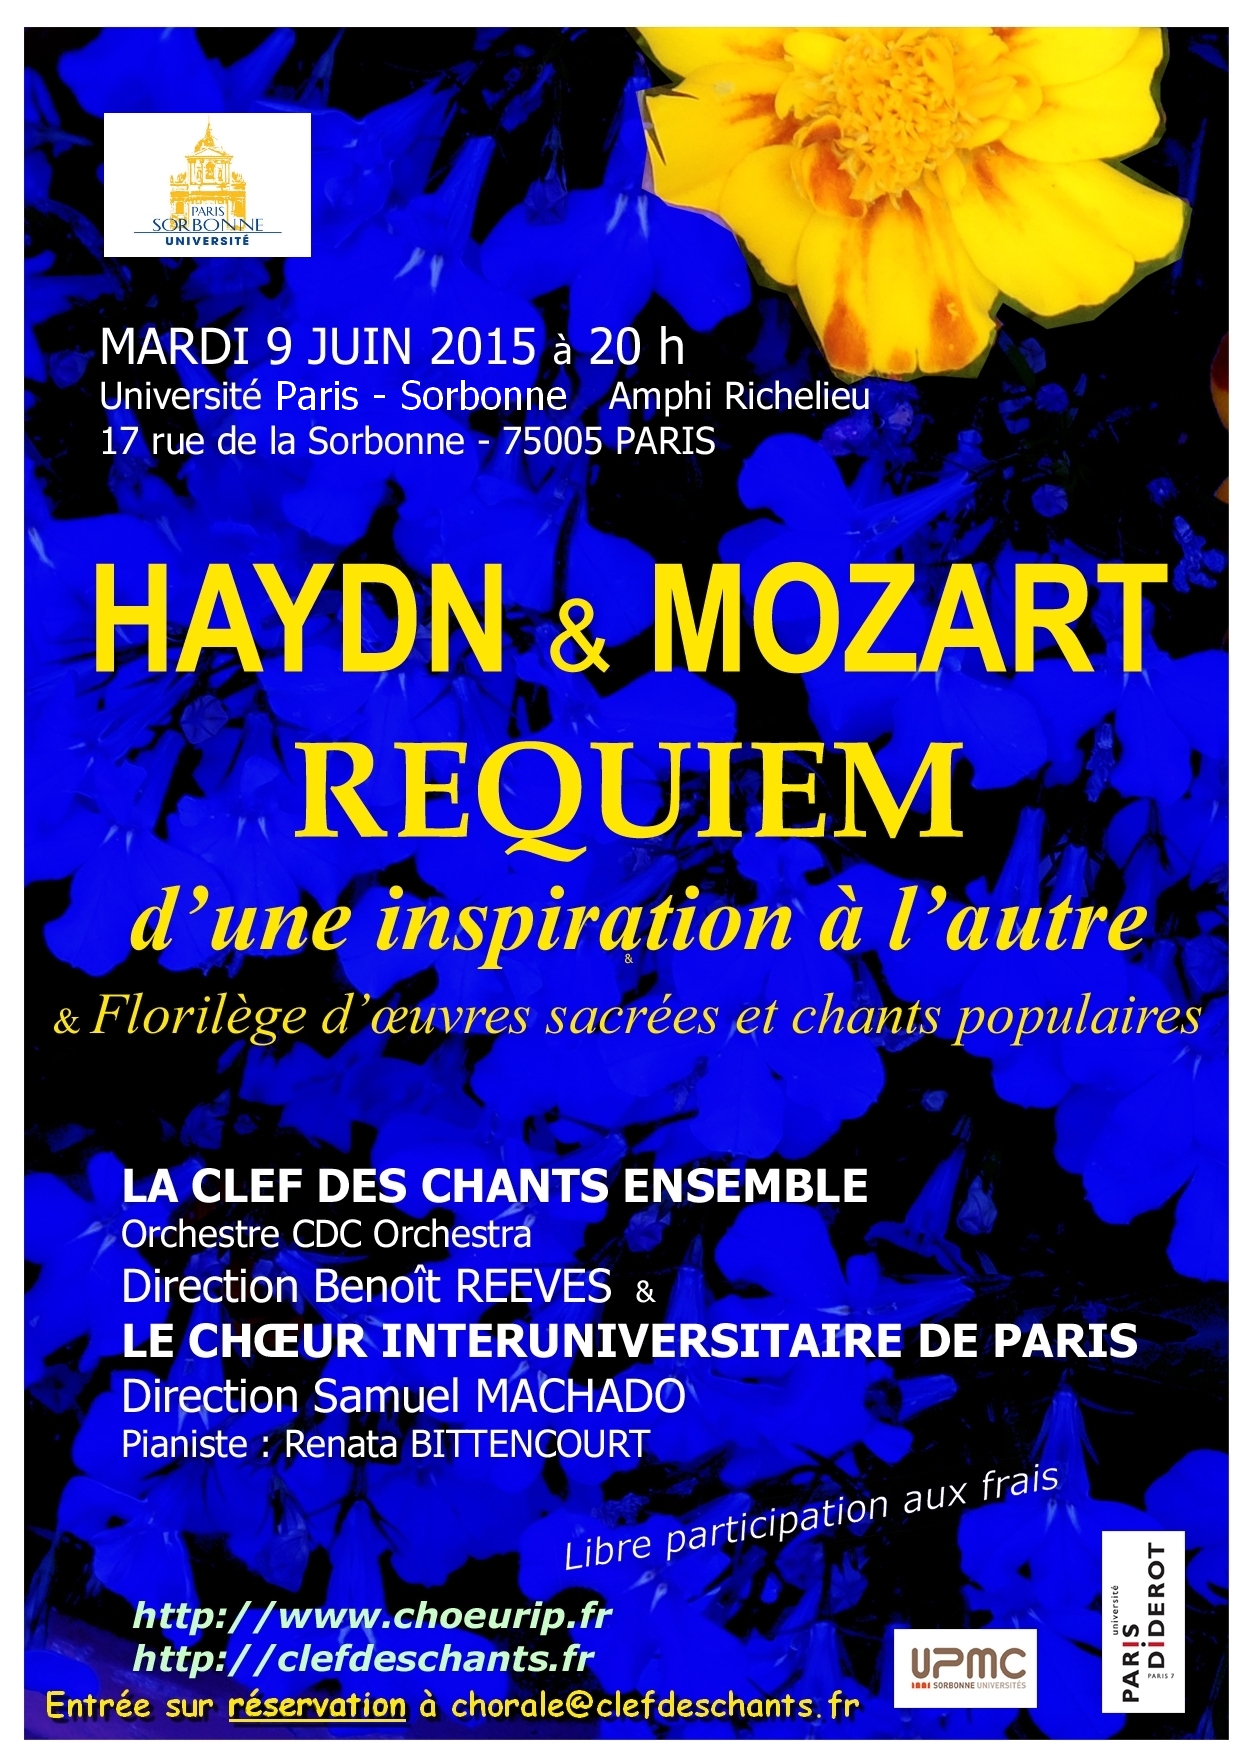 Concert Haydn et Mozart 9 juin 2015